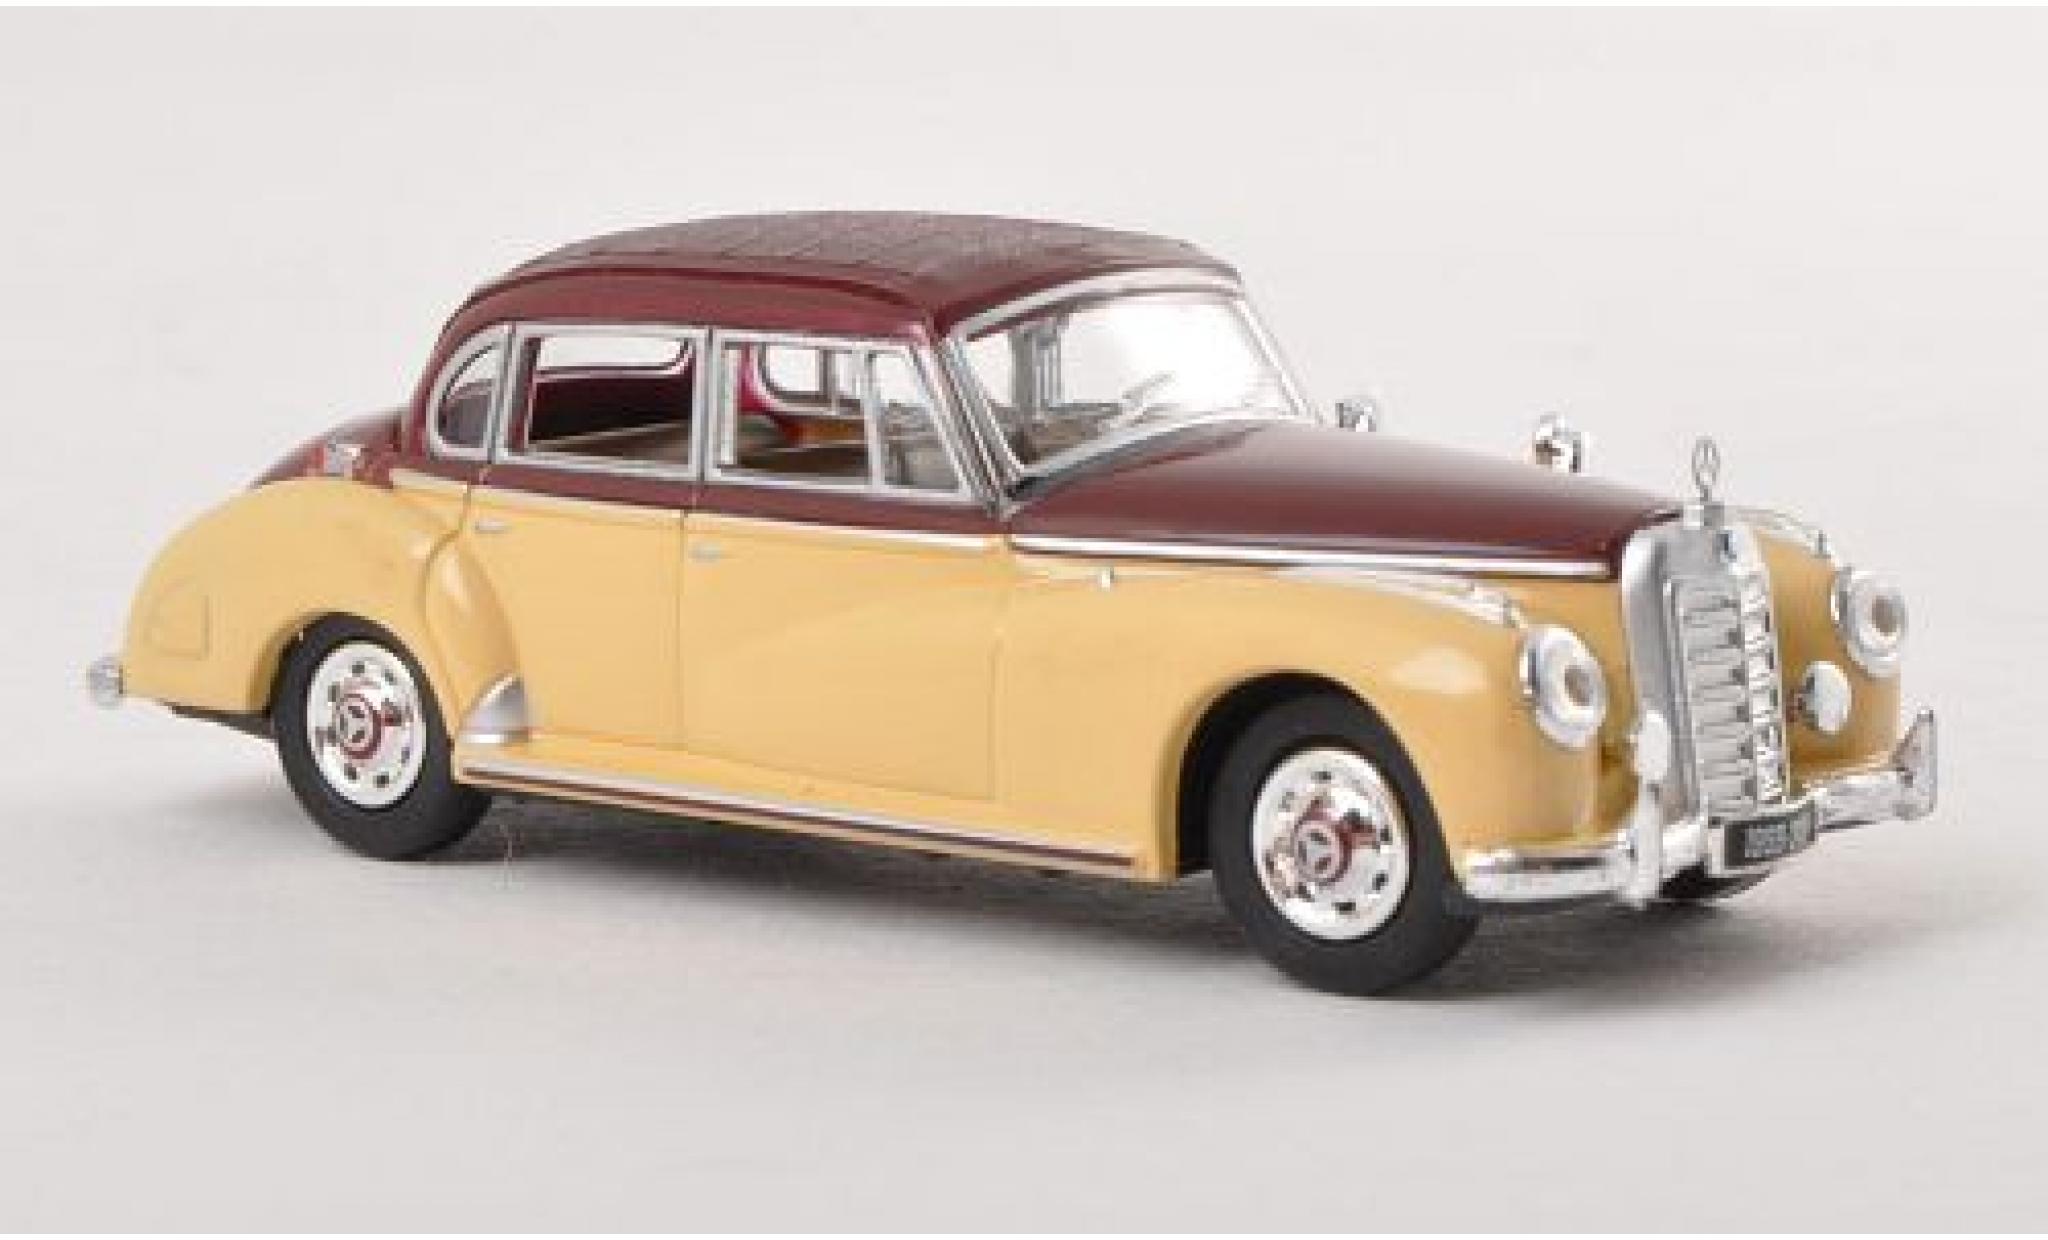 Mercedes 300 1/87 Ricko c (W186) beige/brown 1955 ohne Vitrine